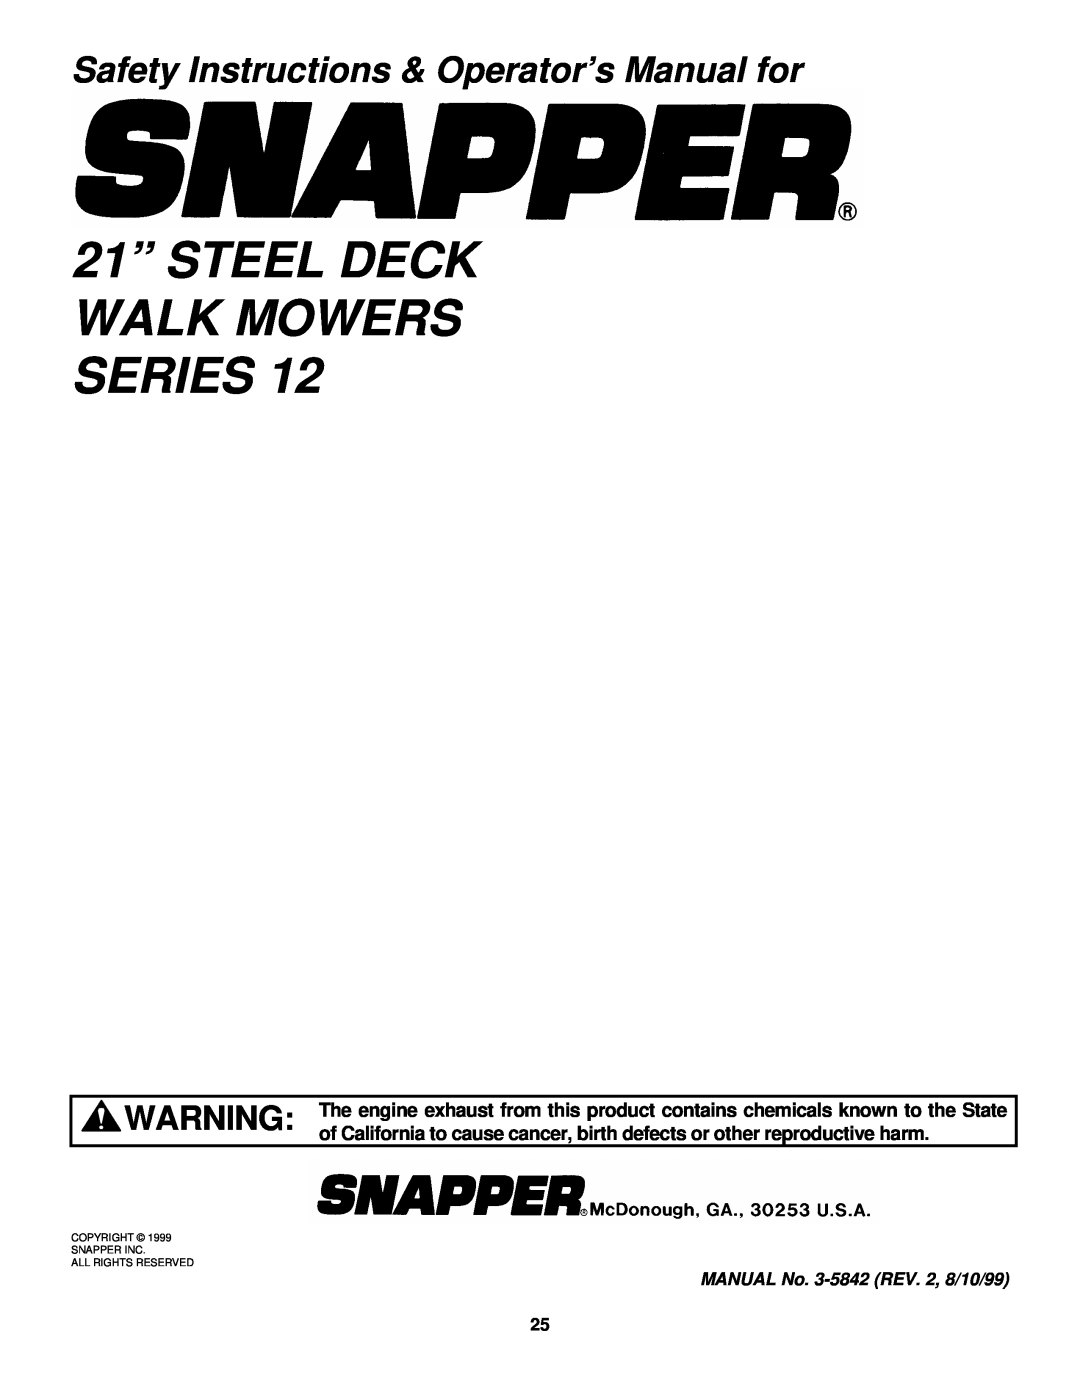 Snapper P216012TV, FRP216012TV, EFRP216012TV, EFRP216512TV, EFRP216516TV 21” STEEL DECK WALK MOWERS SERIES 